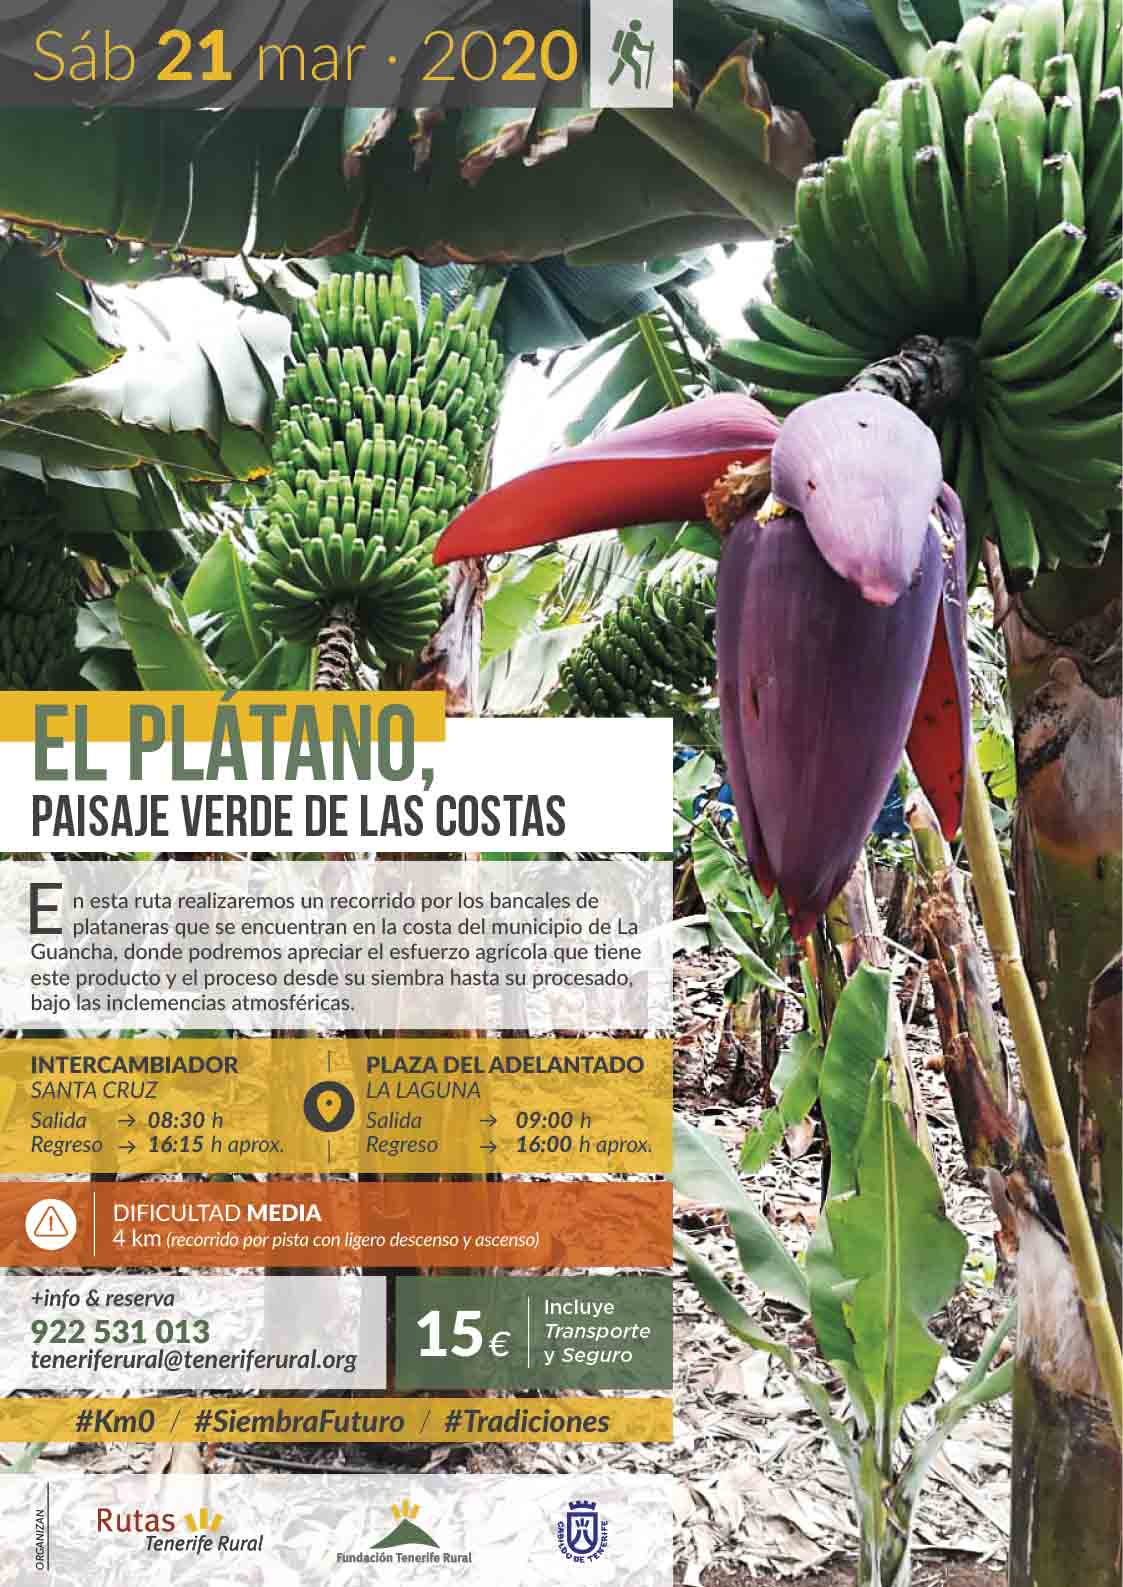 Ruta guiada “El Plátano, paisaje verde de las costas”, 21 de marzo de 2020